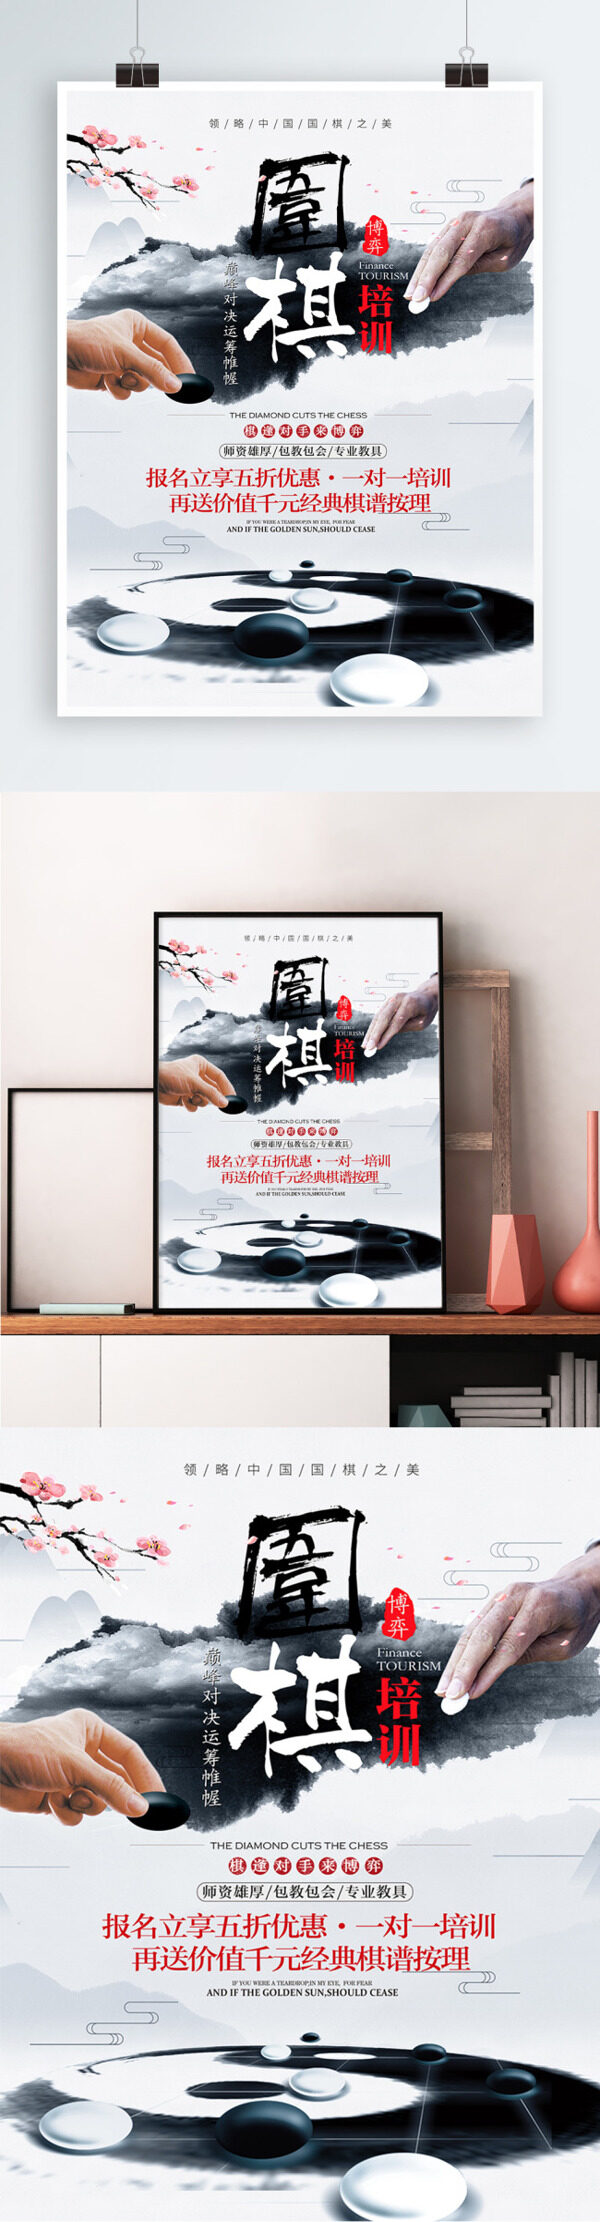 中国风围棋培训班学习班宣传促销海报展板